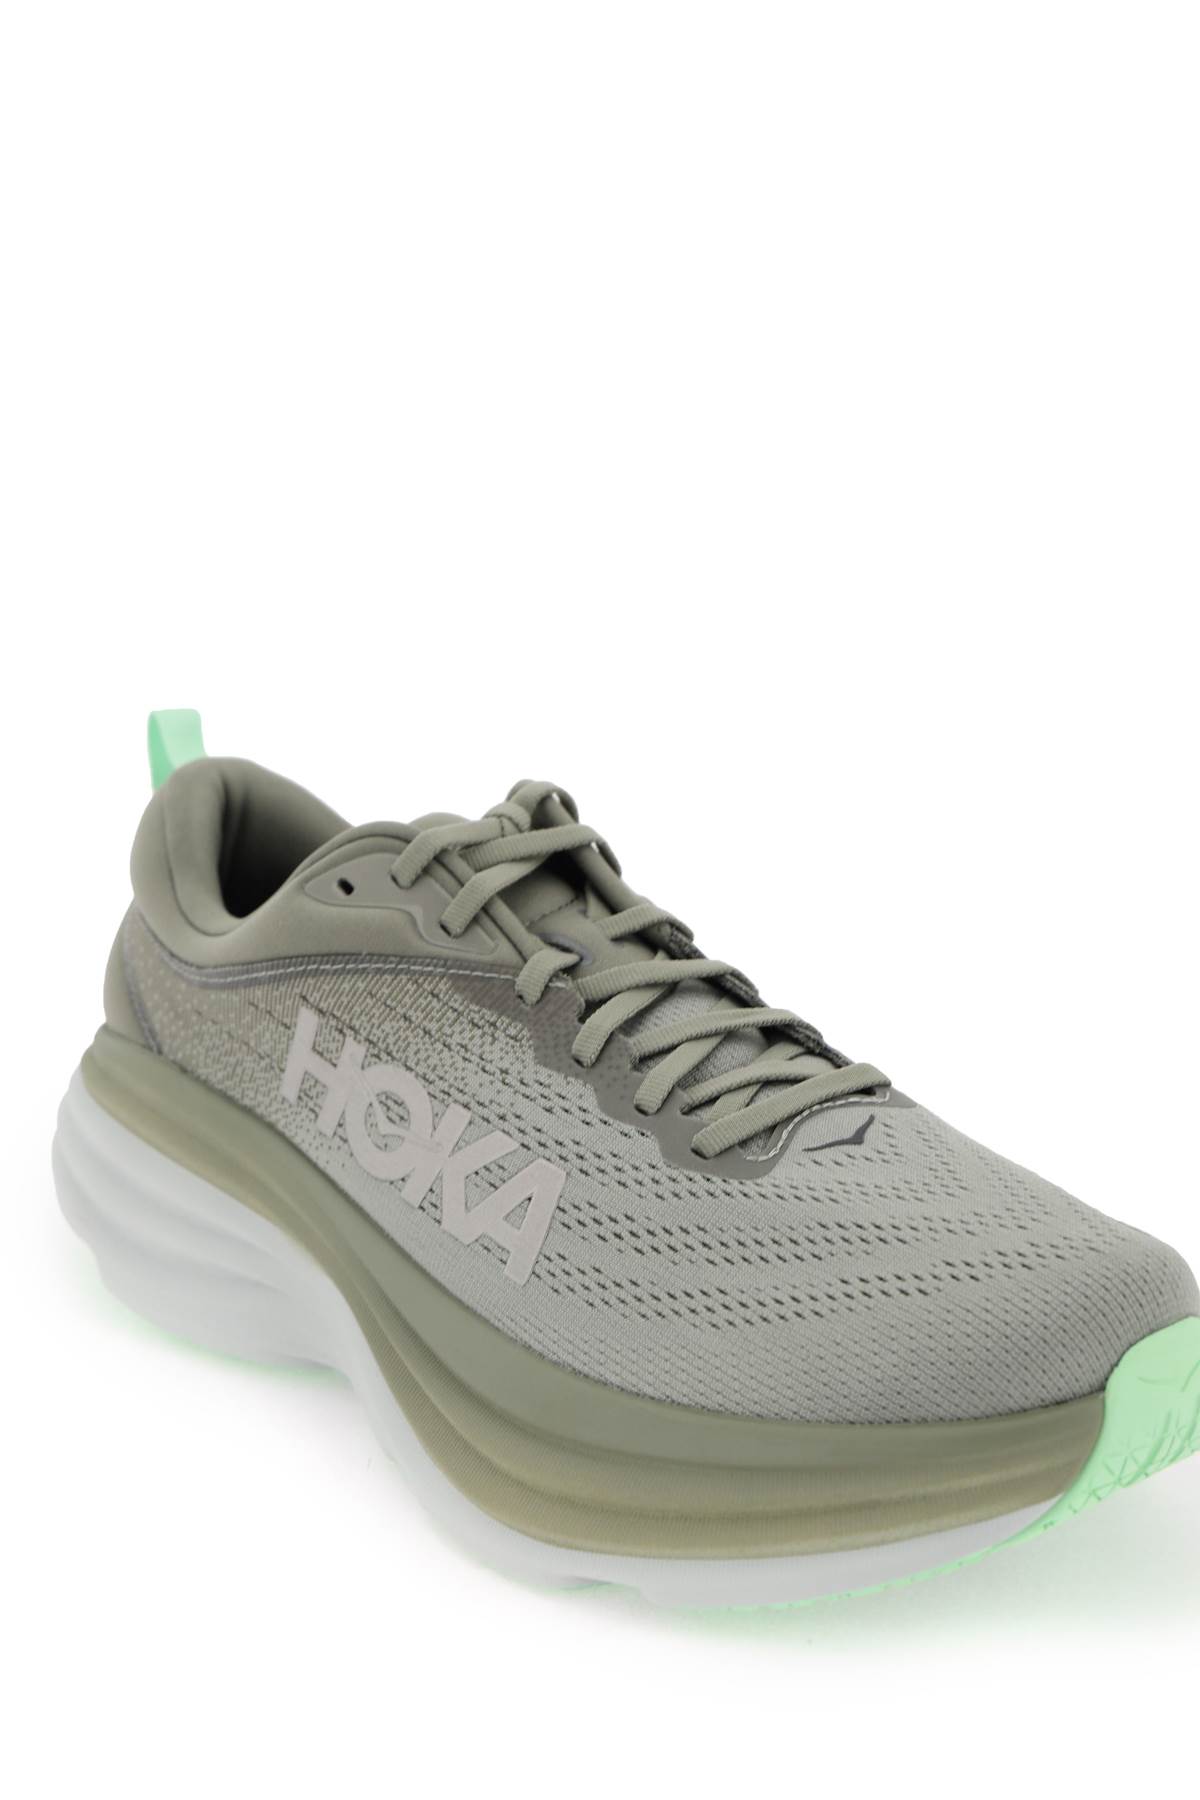 Shop Hoka Bondi 8 Sneakers In Olive Haze Mercury (khaki)